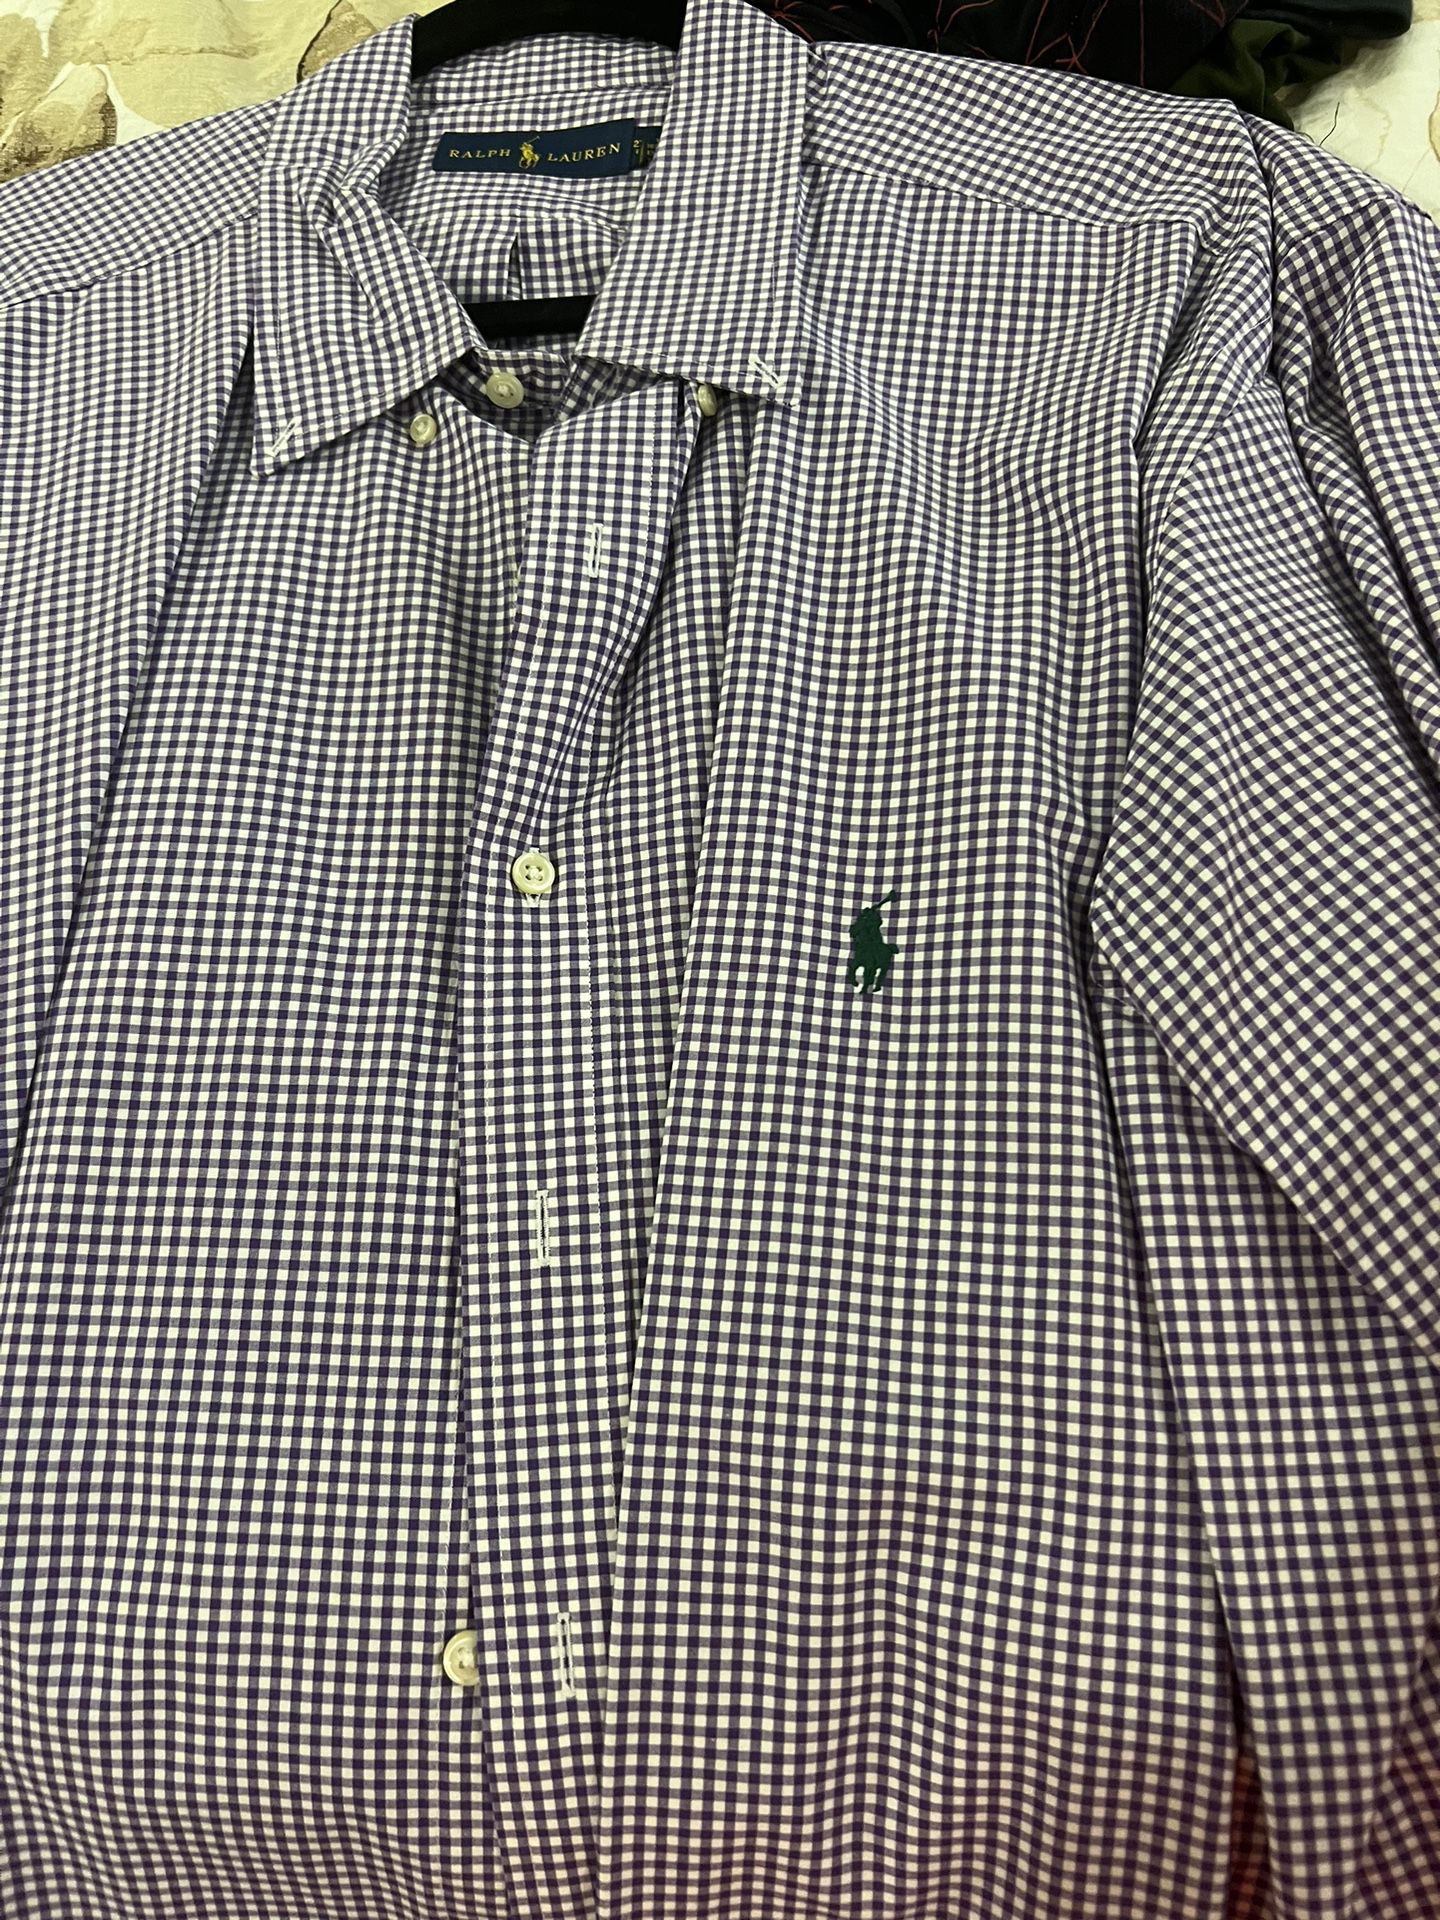 4 Polo Shirts  Ralph Lauren  